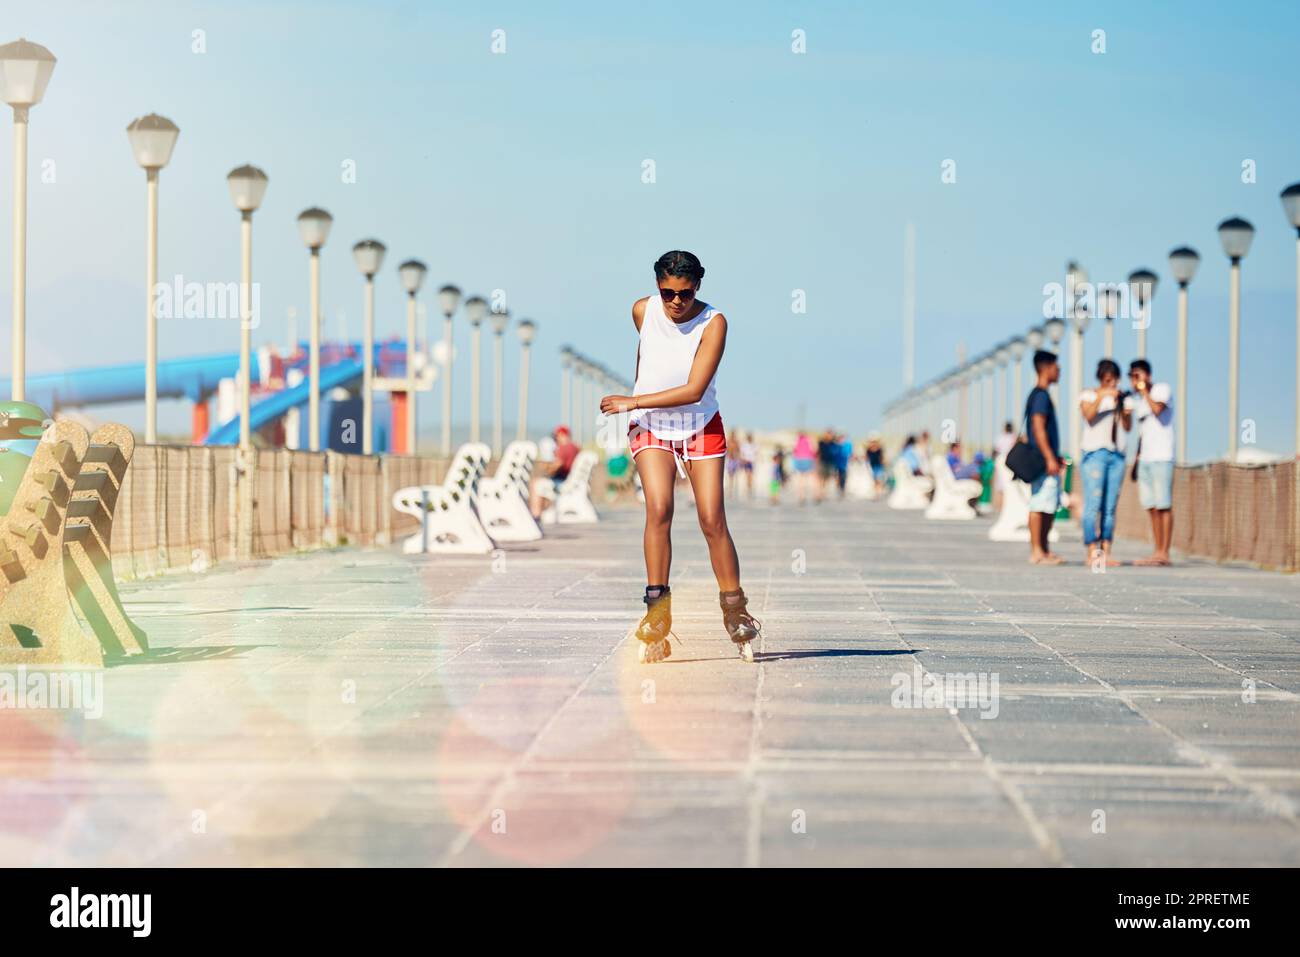 Gehen Sie hinaus und skaten Sie, bevor es zu spät ist. Eine attraktive junge Frau rollerblading auf einer Promenade. Stockfoto